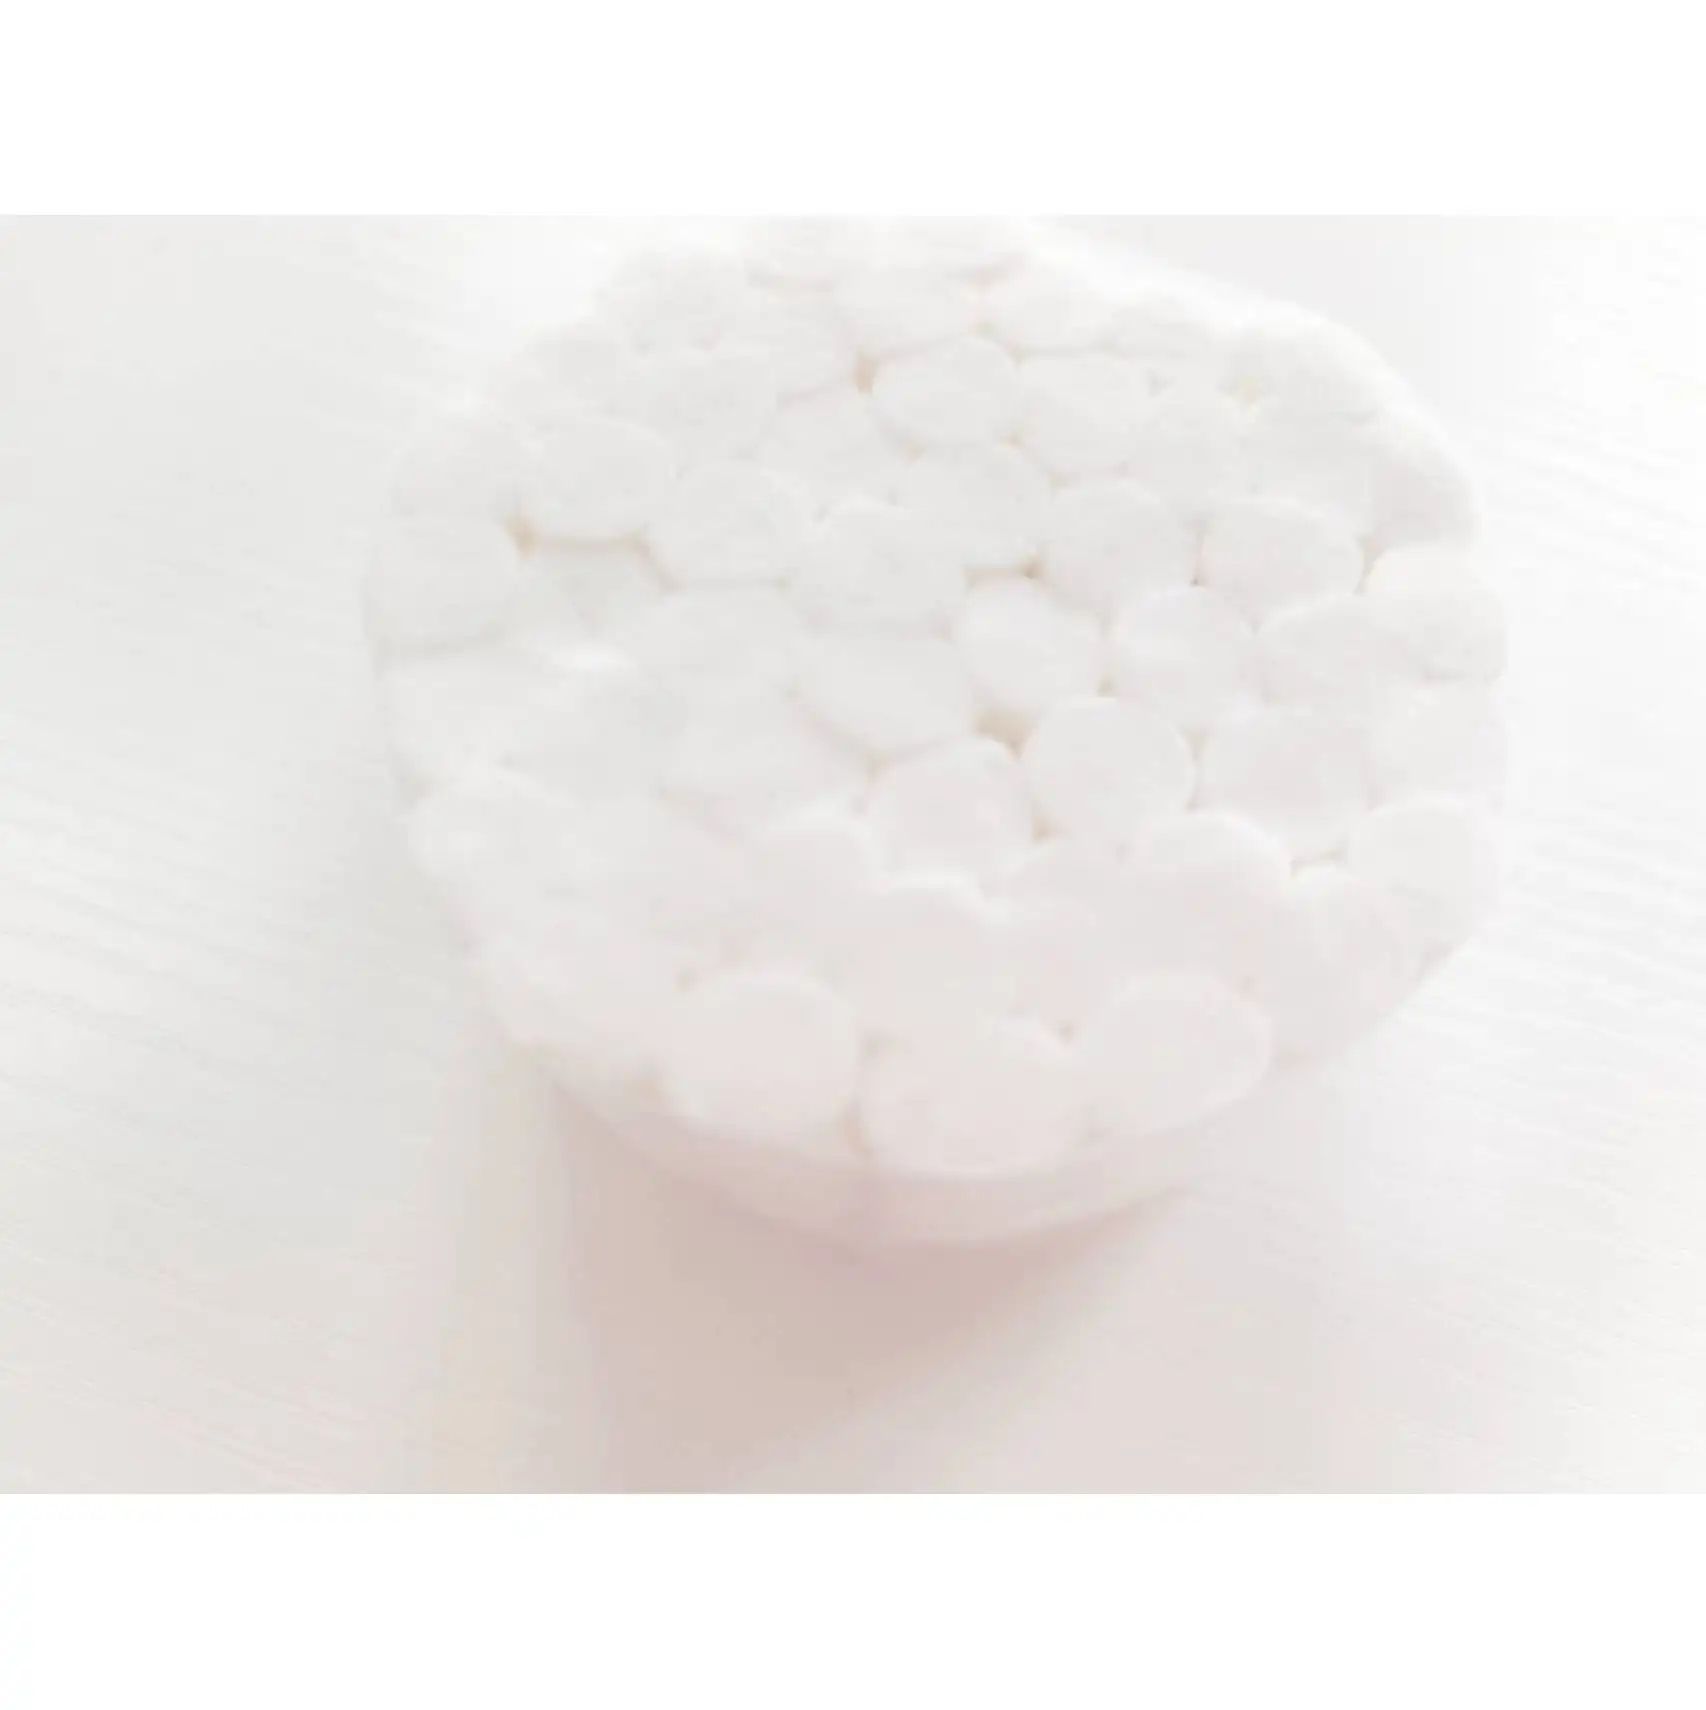 Rouleau de coton naturel 100% non stérile 50pcs rouleau de coton dentaire hautement absorbant